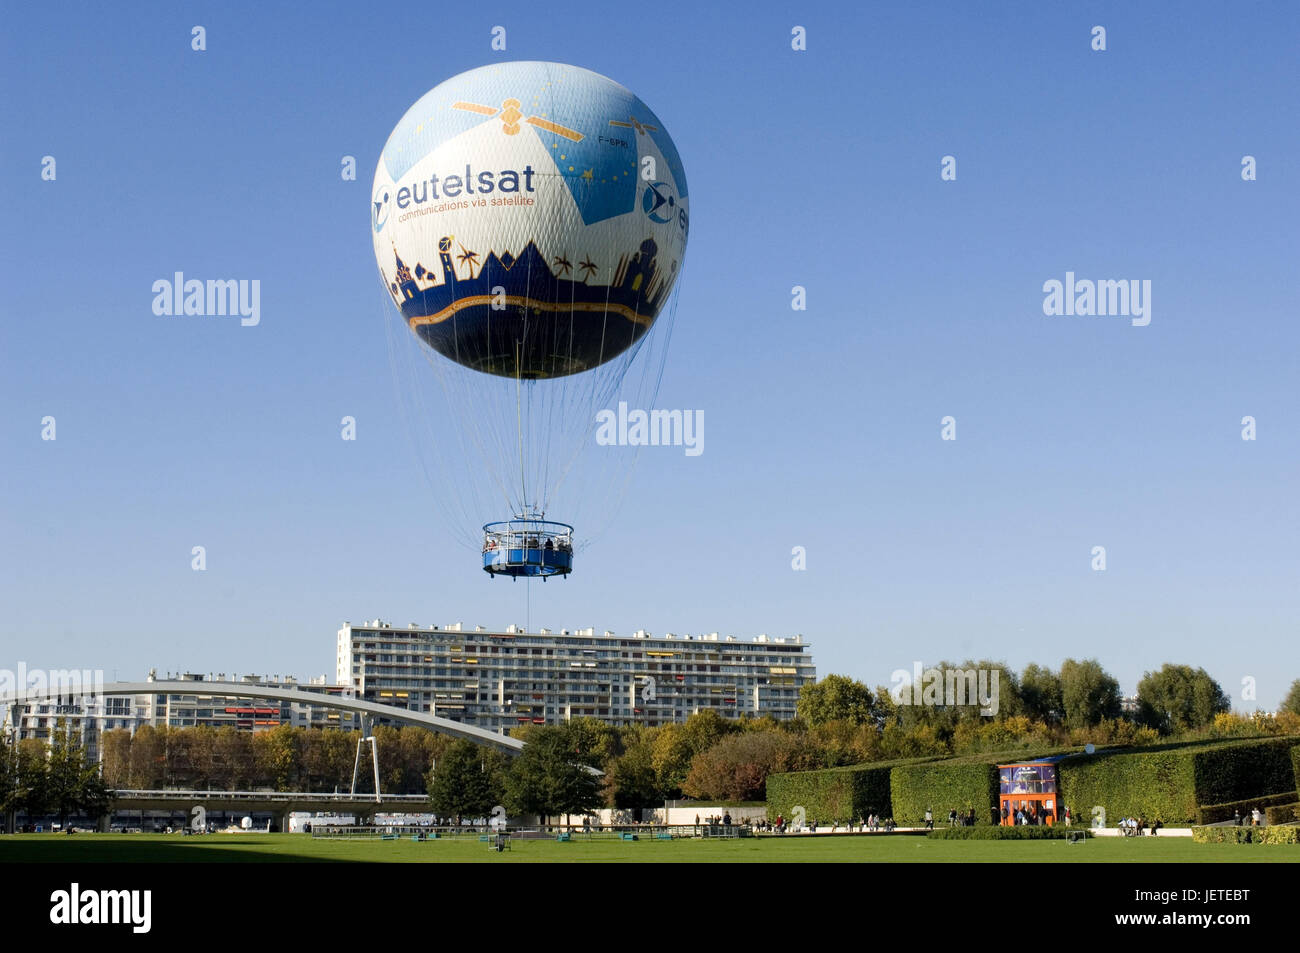 France, Paris, Parc Andre Citroen, captive balloon, stroke 'eutelsat', no property release, Stock Photo